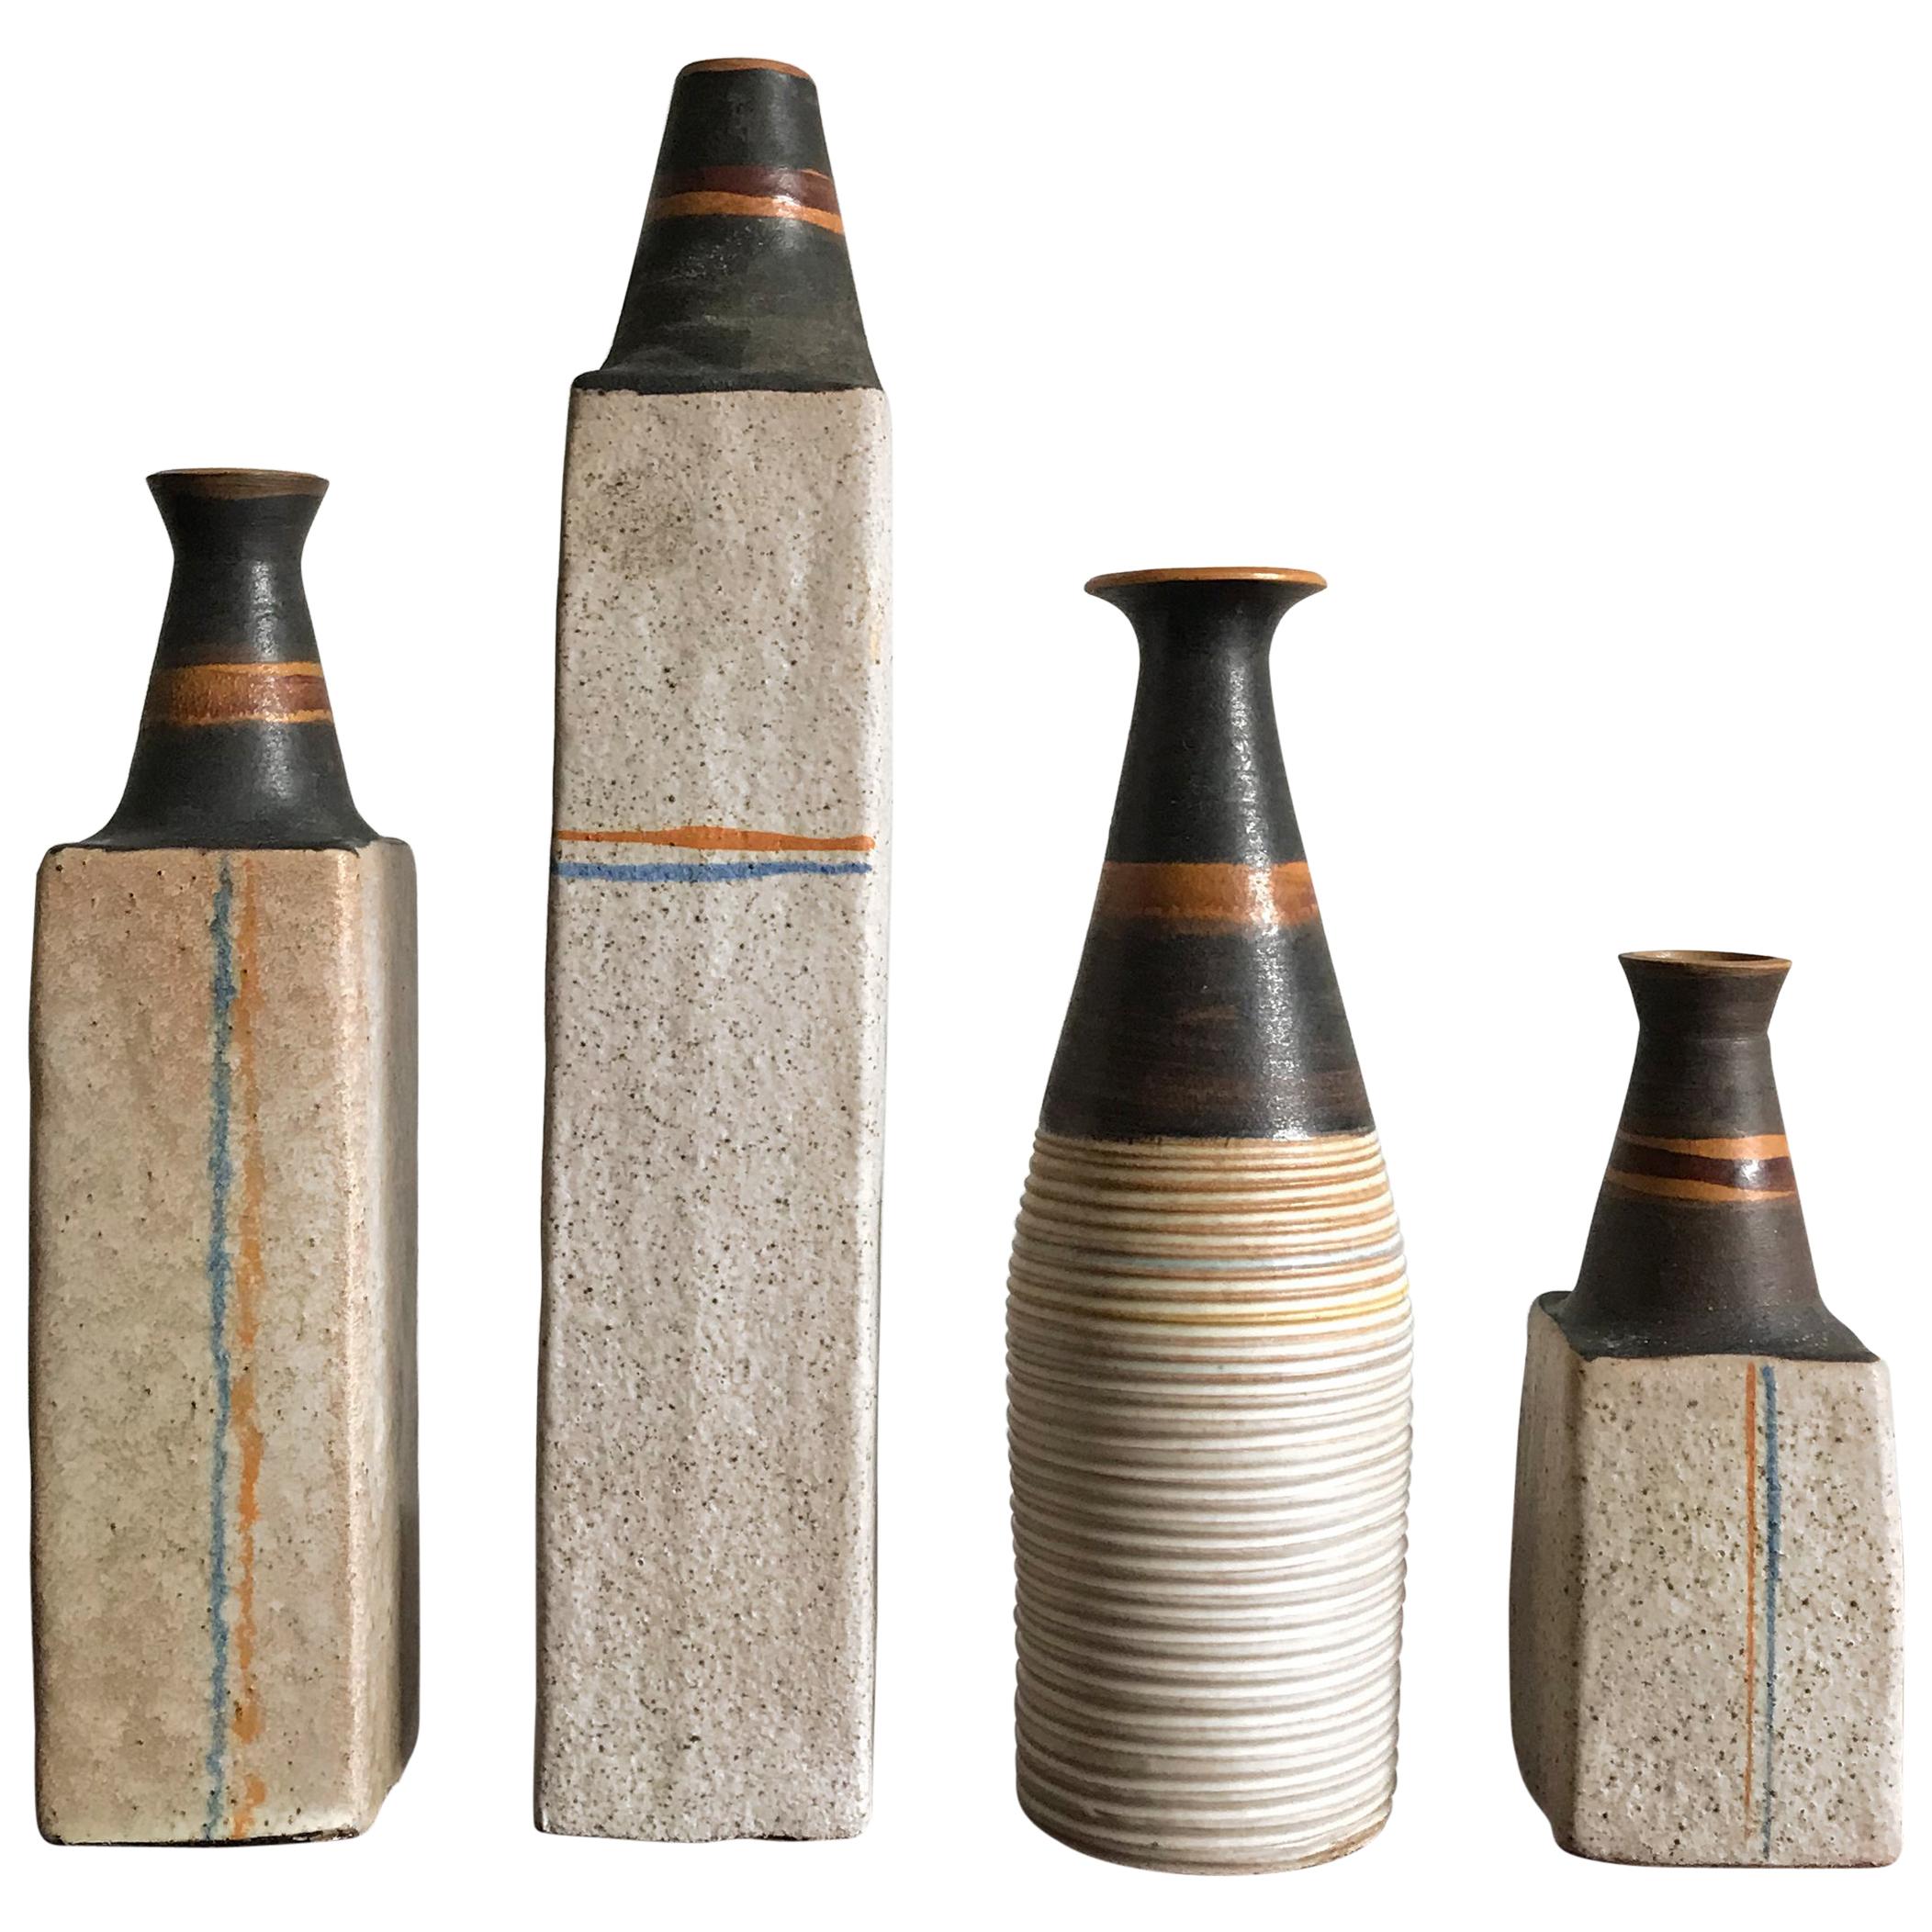 Ivo Sassi Design Modernity Modernne Italien Vases Bouteilles en céramique, 1950s